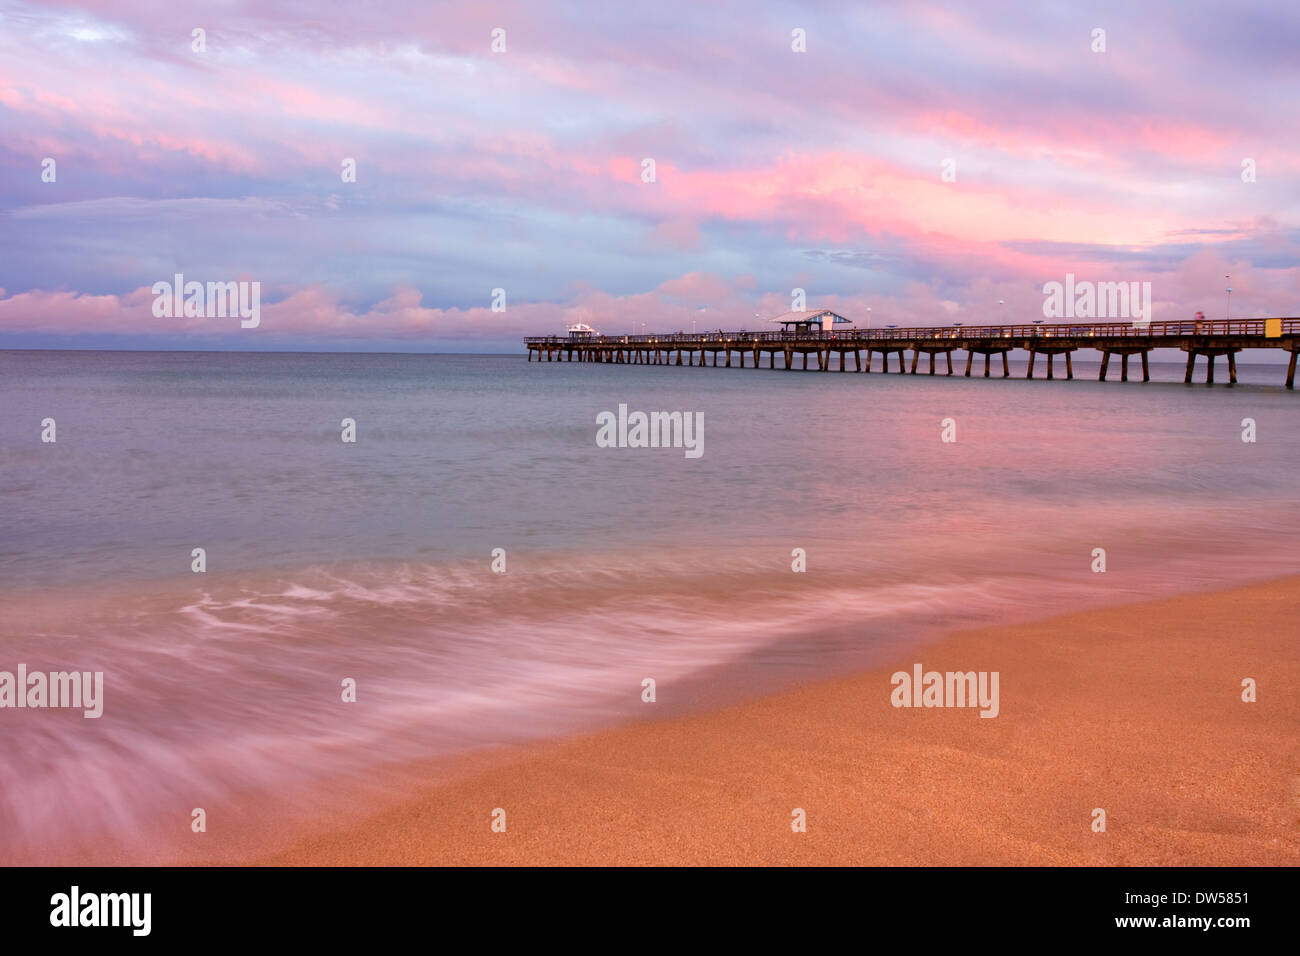 Lauderdale vicino al molo sul mare al tramonto, Florida, Stati Uniti d'America Foto Stock